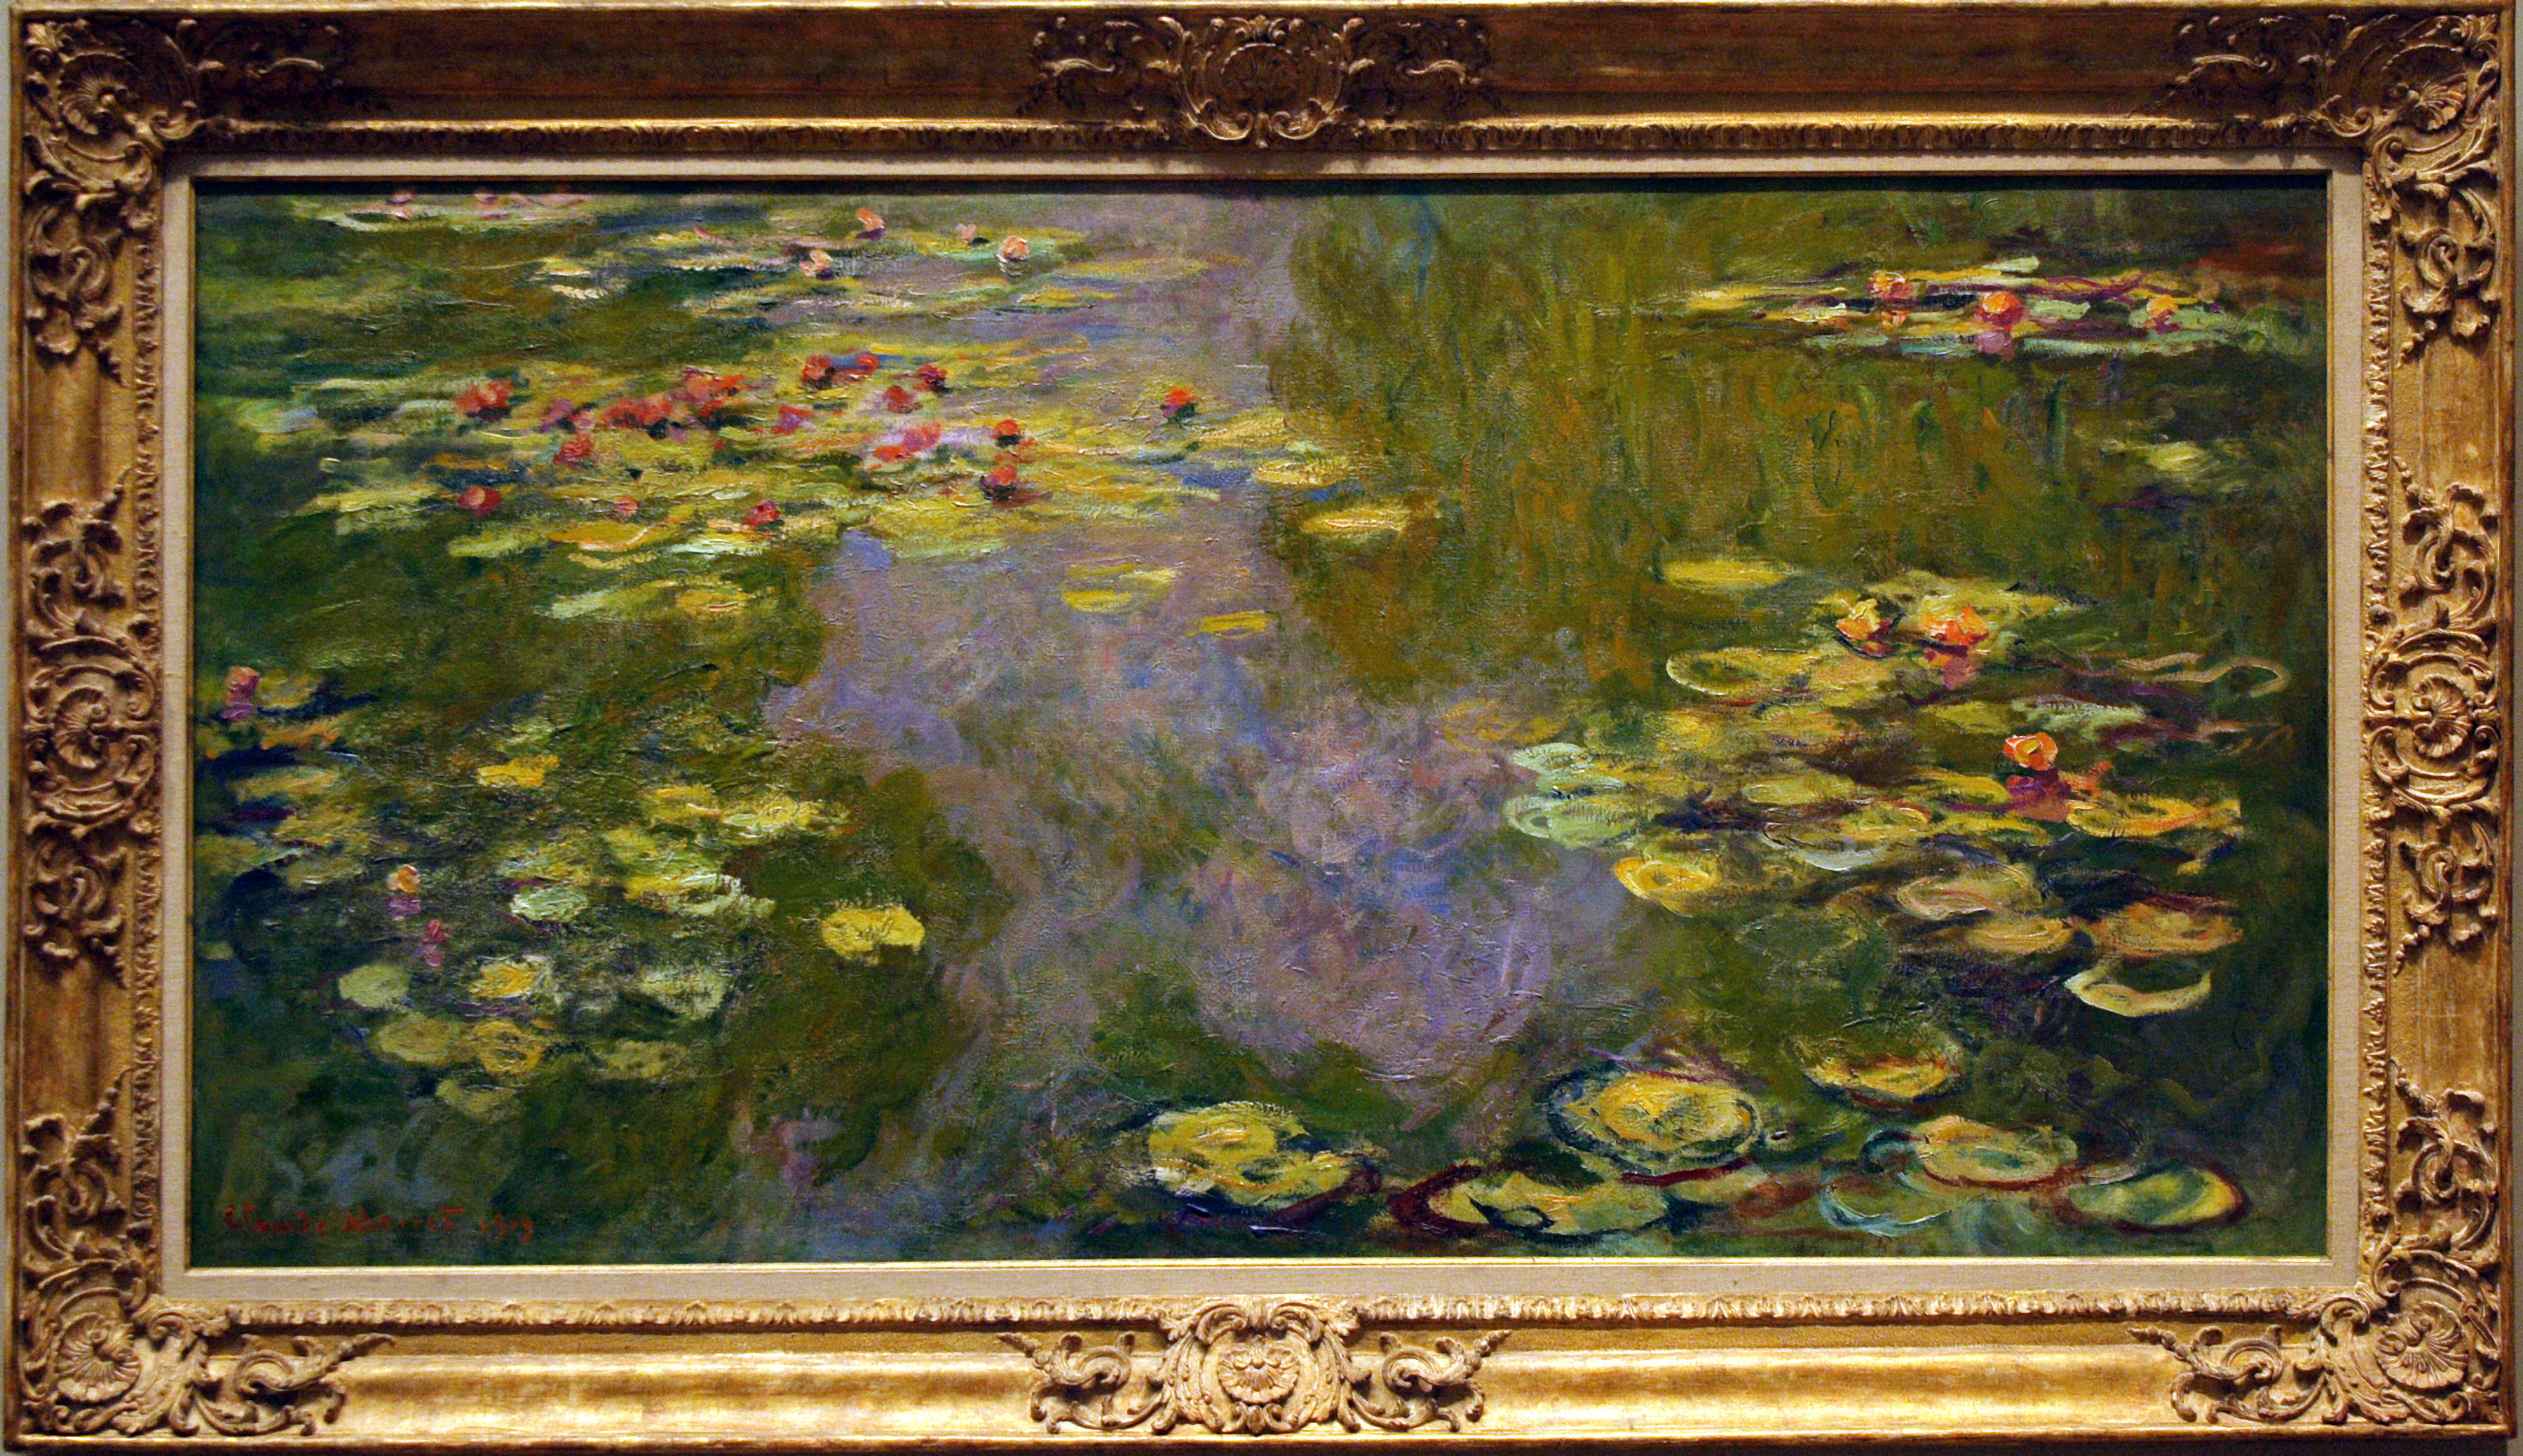 Water Lilies (Monet, 1919)